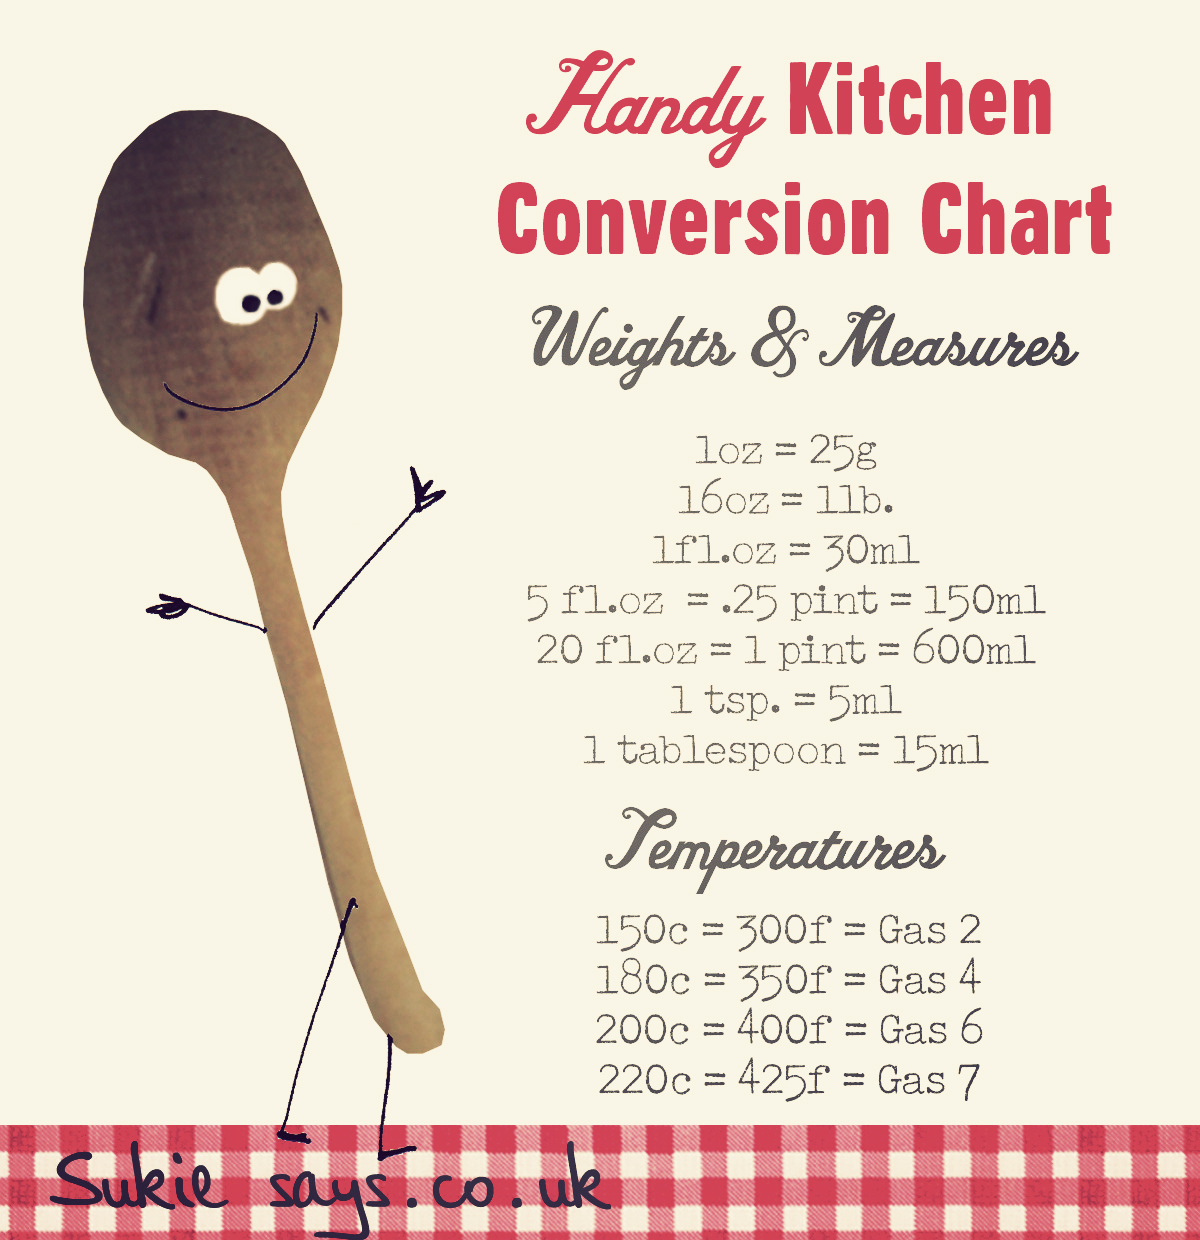 handy-kitchen-conversion-chart-kitchen-conversion-conversion-chart-kitchen-conversion-chart